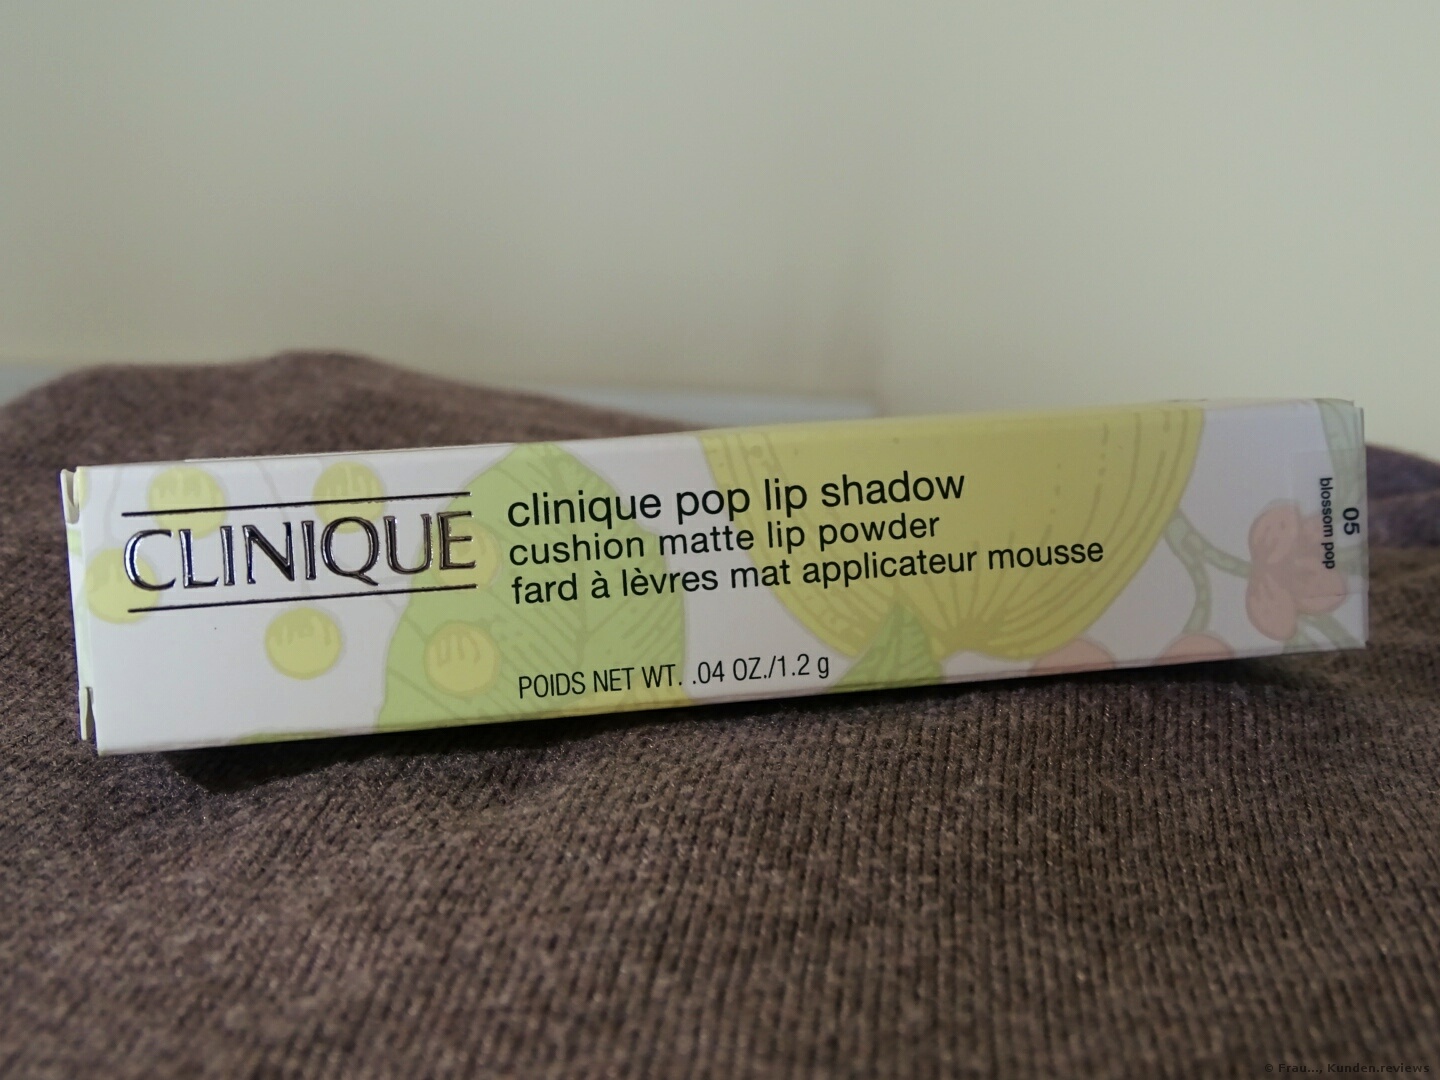  CLINIQUE Pop Lip Shadow Cushion Matte Lip Powder 